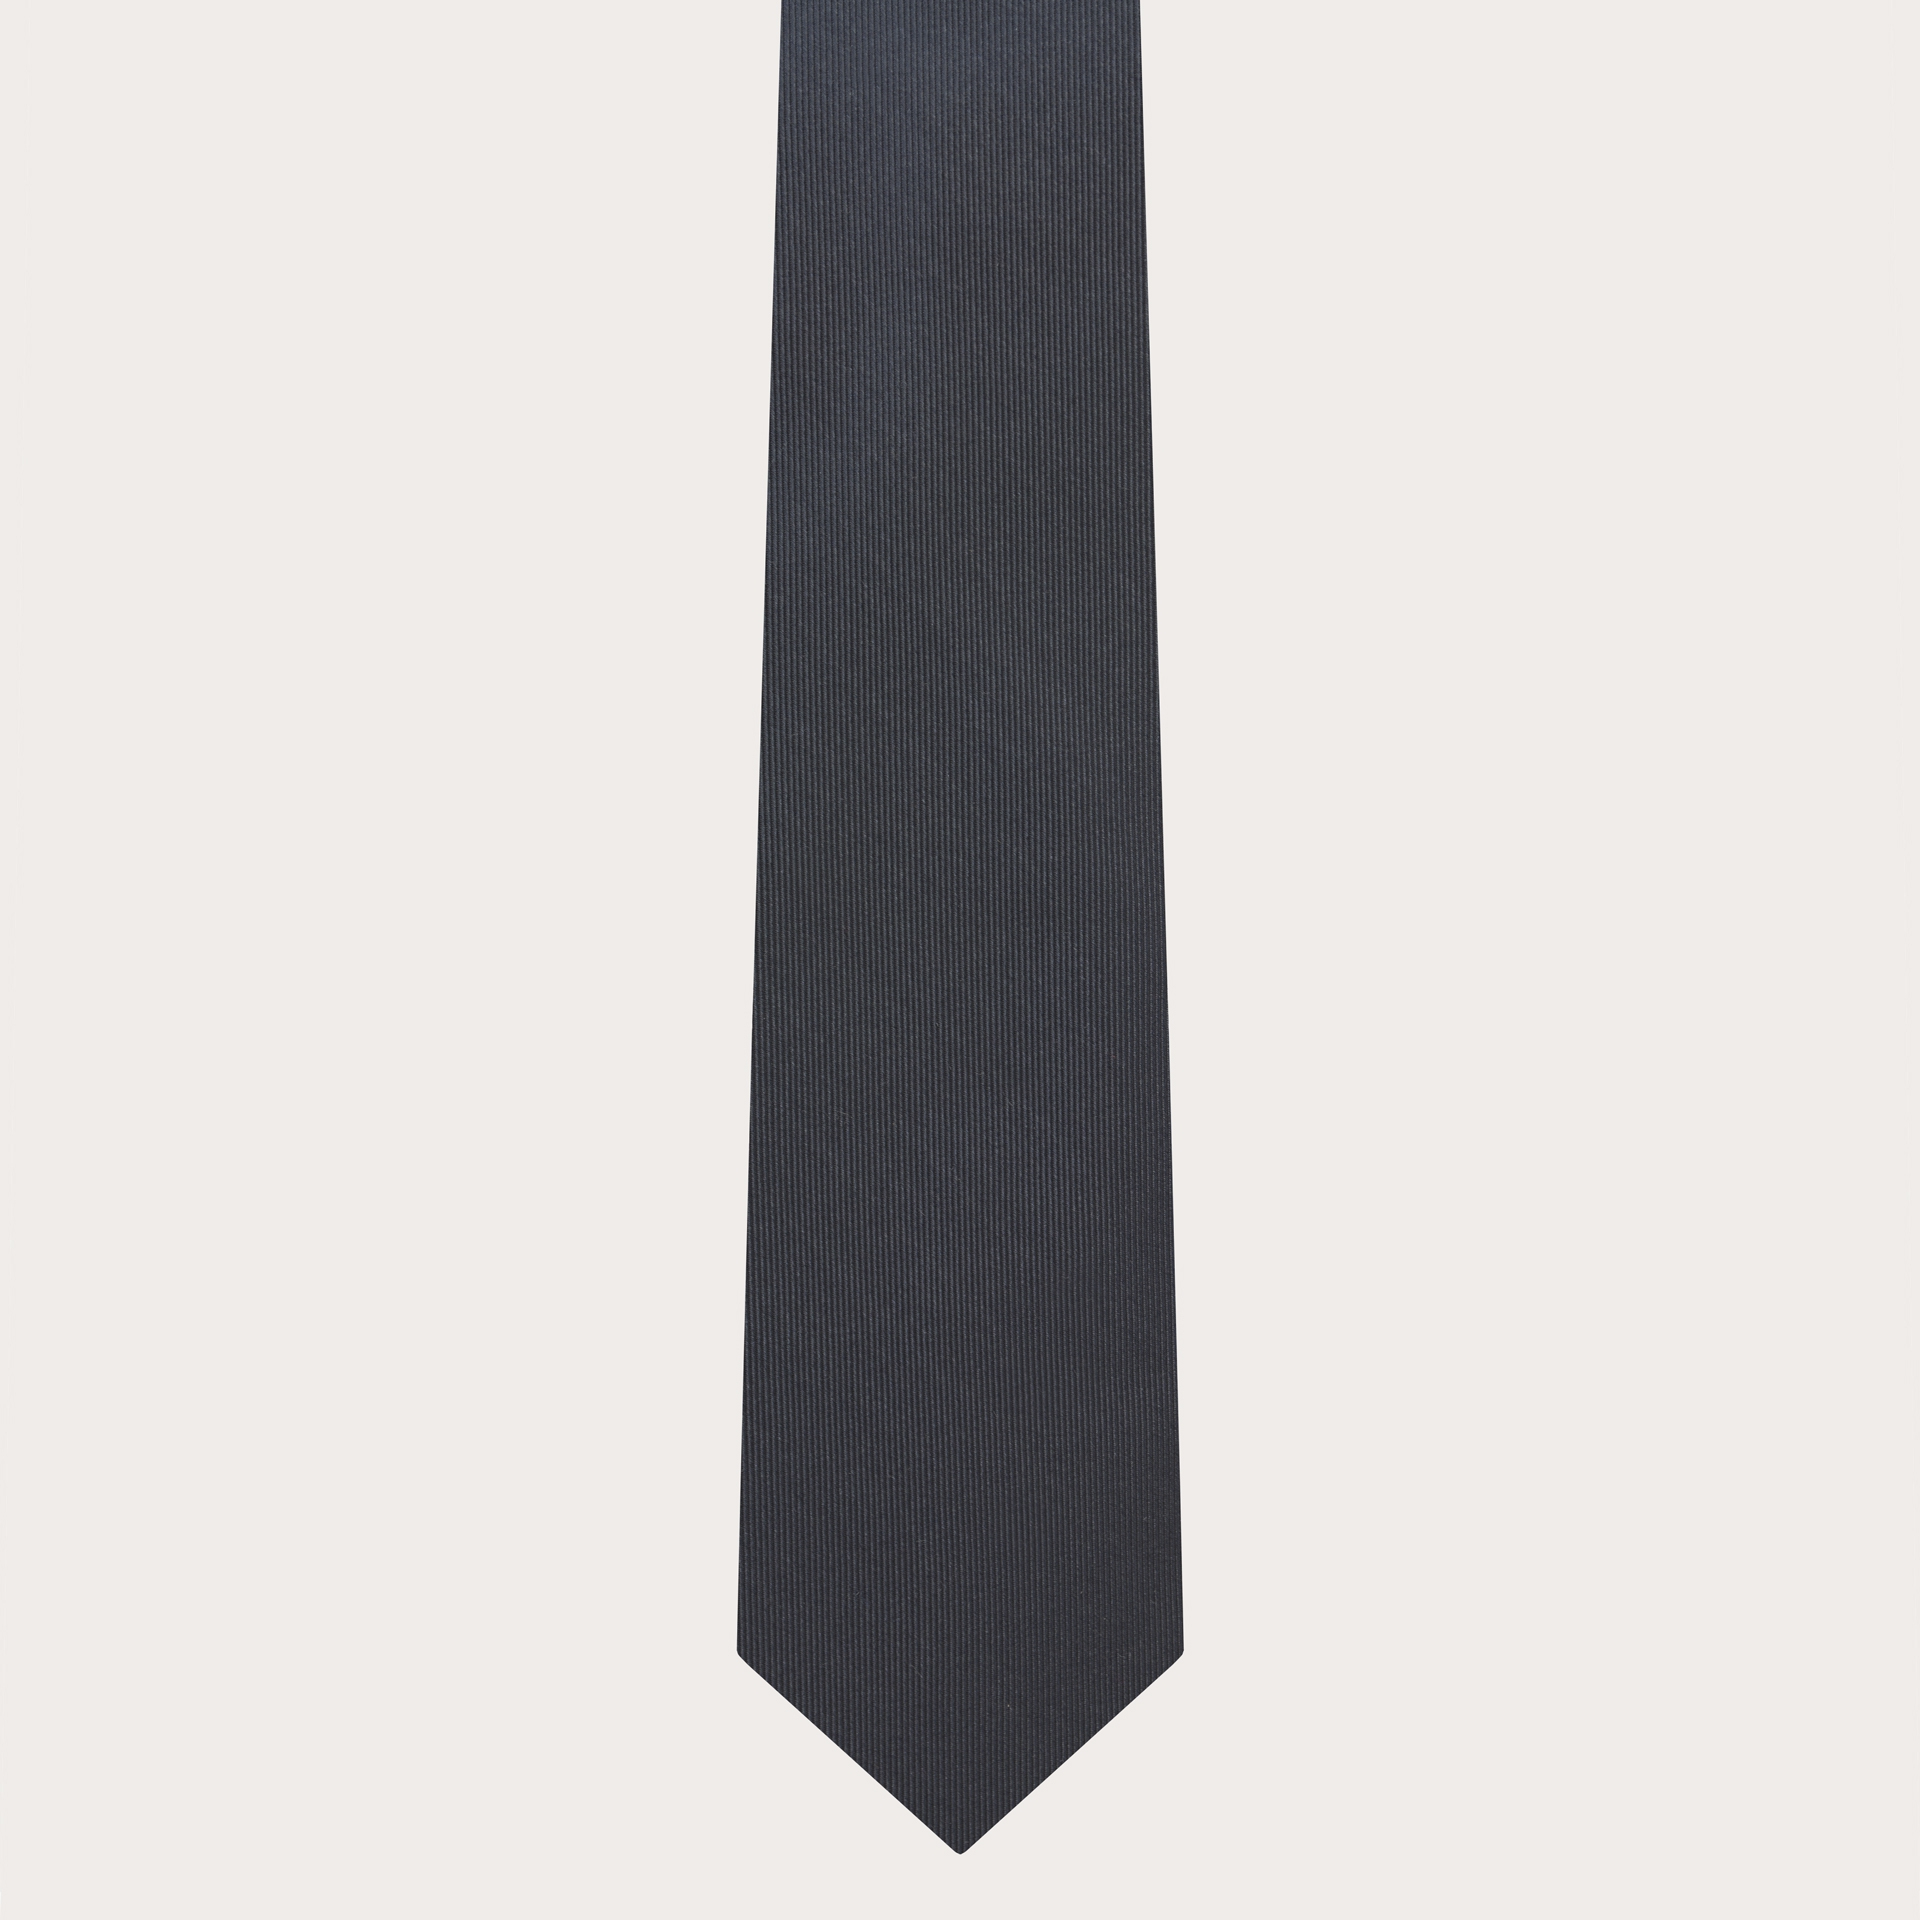 Corbata gris antracita de seda jacquard